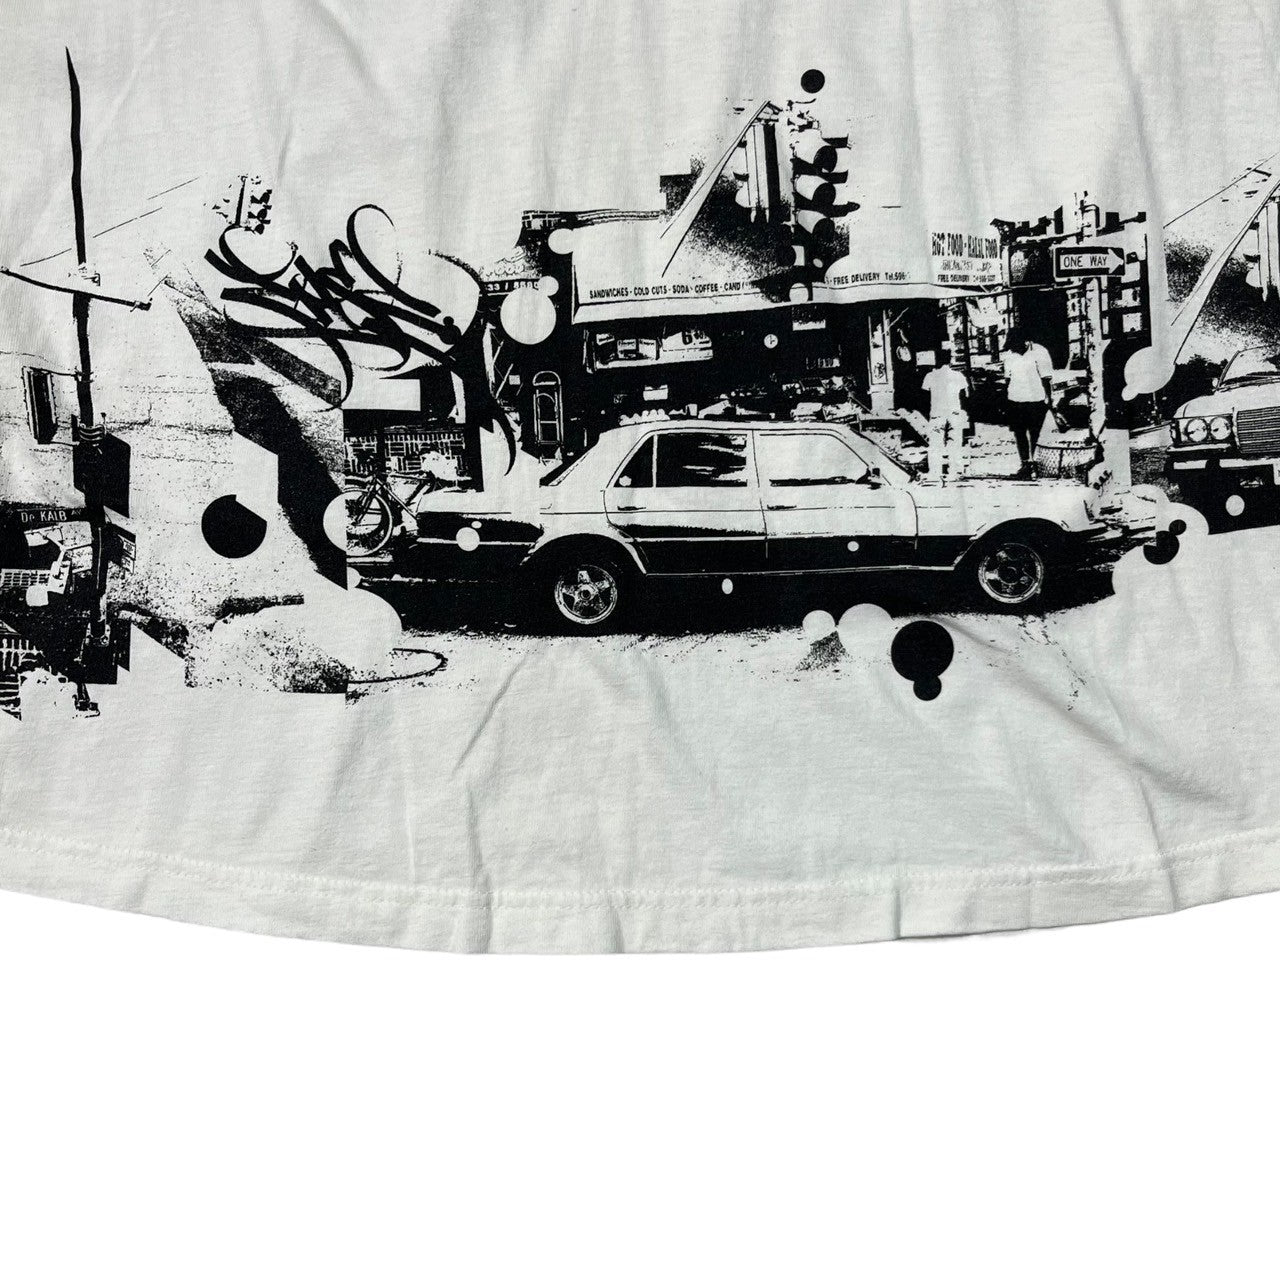 STUSSY(ステューシー) 90’s~00's landscape painting with cars 車 景色 Tシャツ 紺タグ SIZE M ホワイト×ブラック 90～00年代 OLD STUSSY